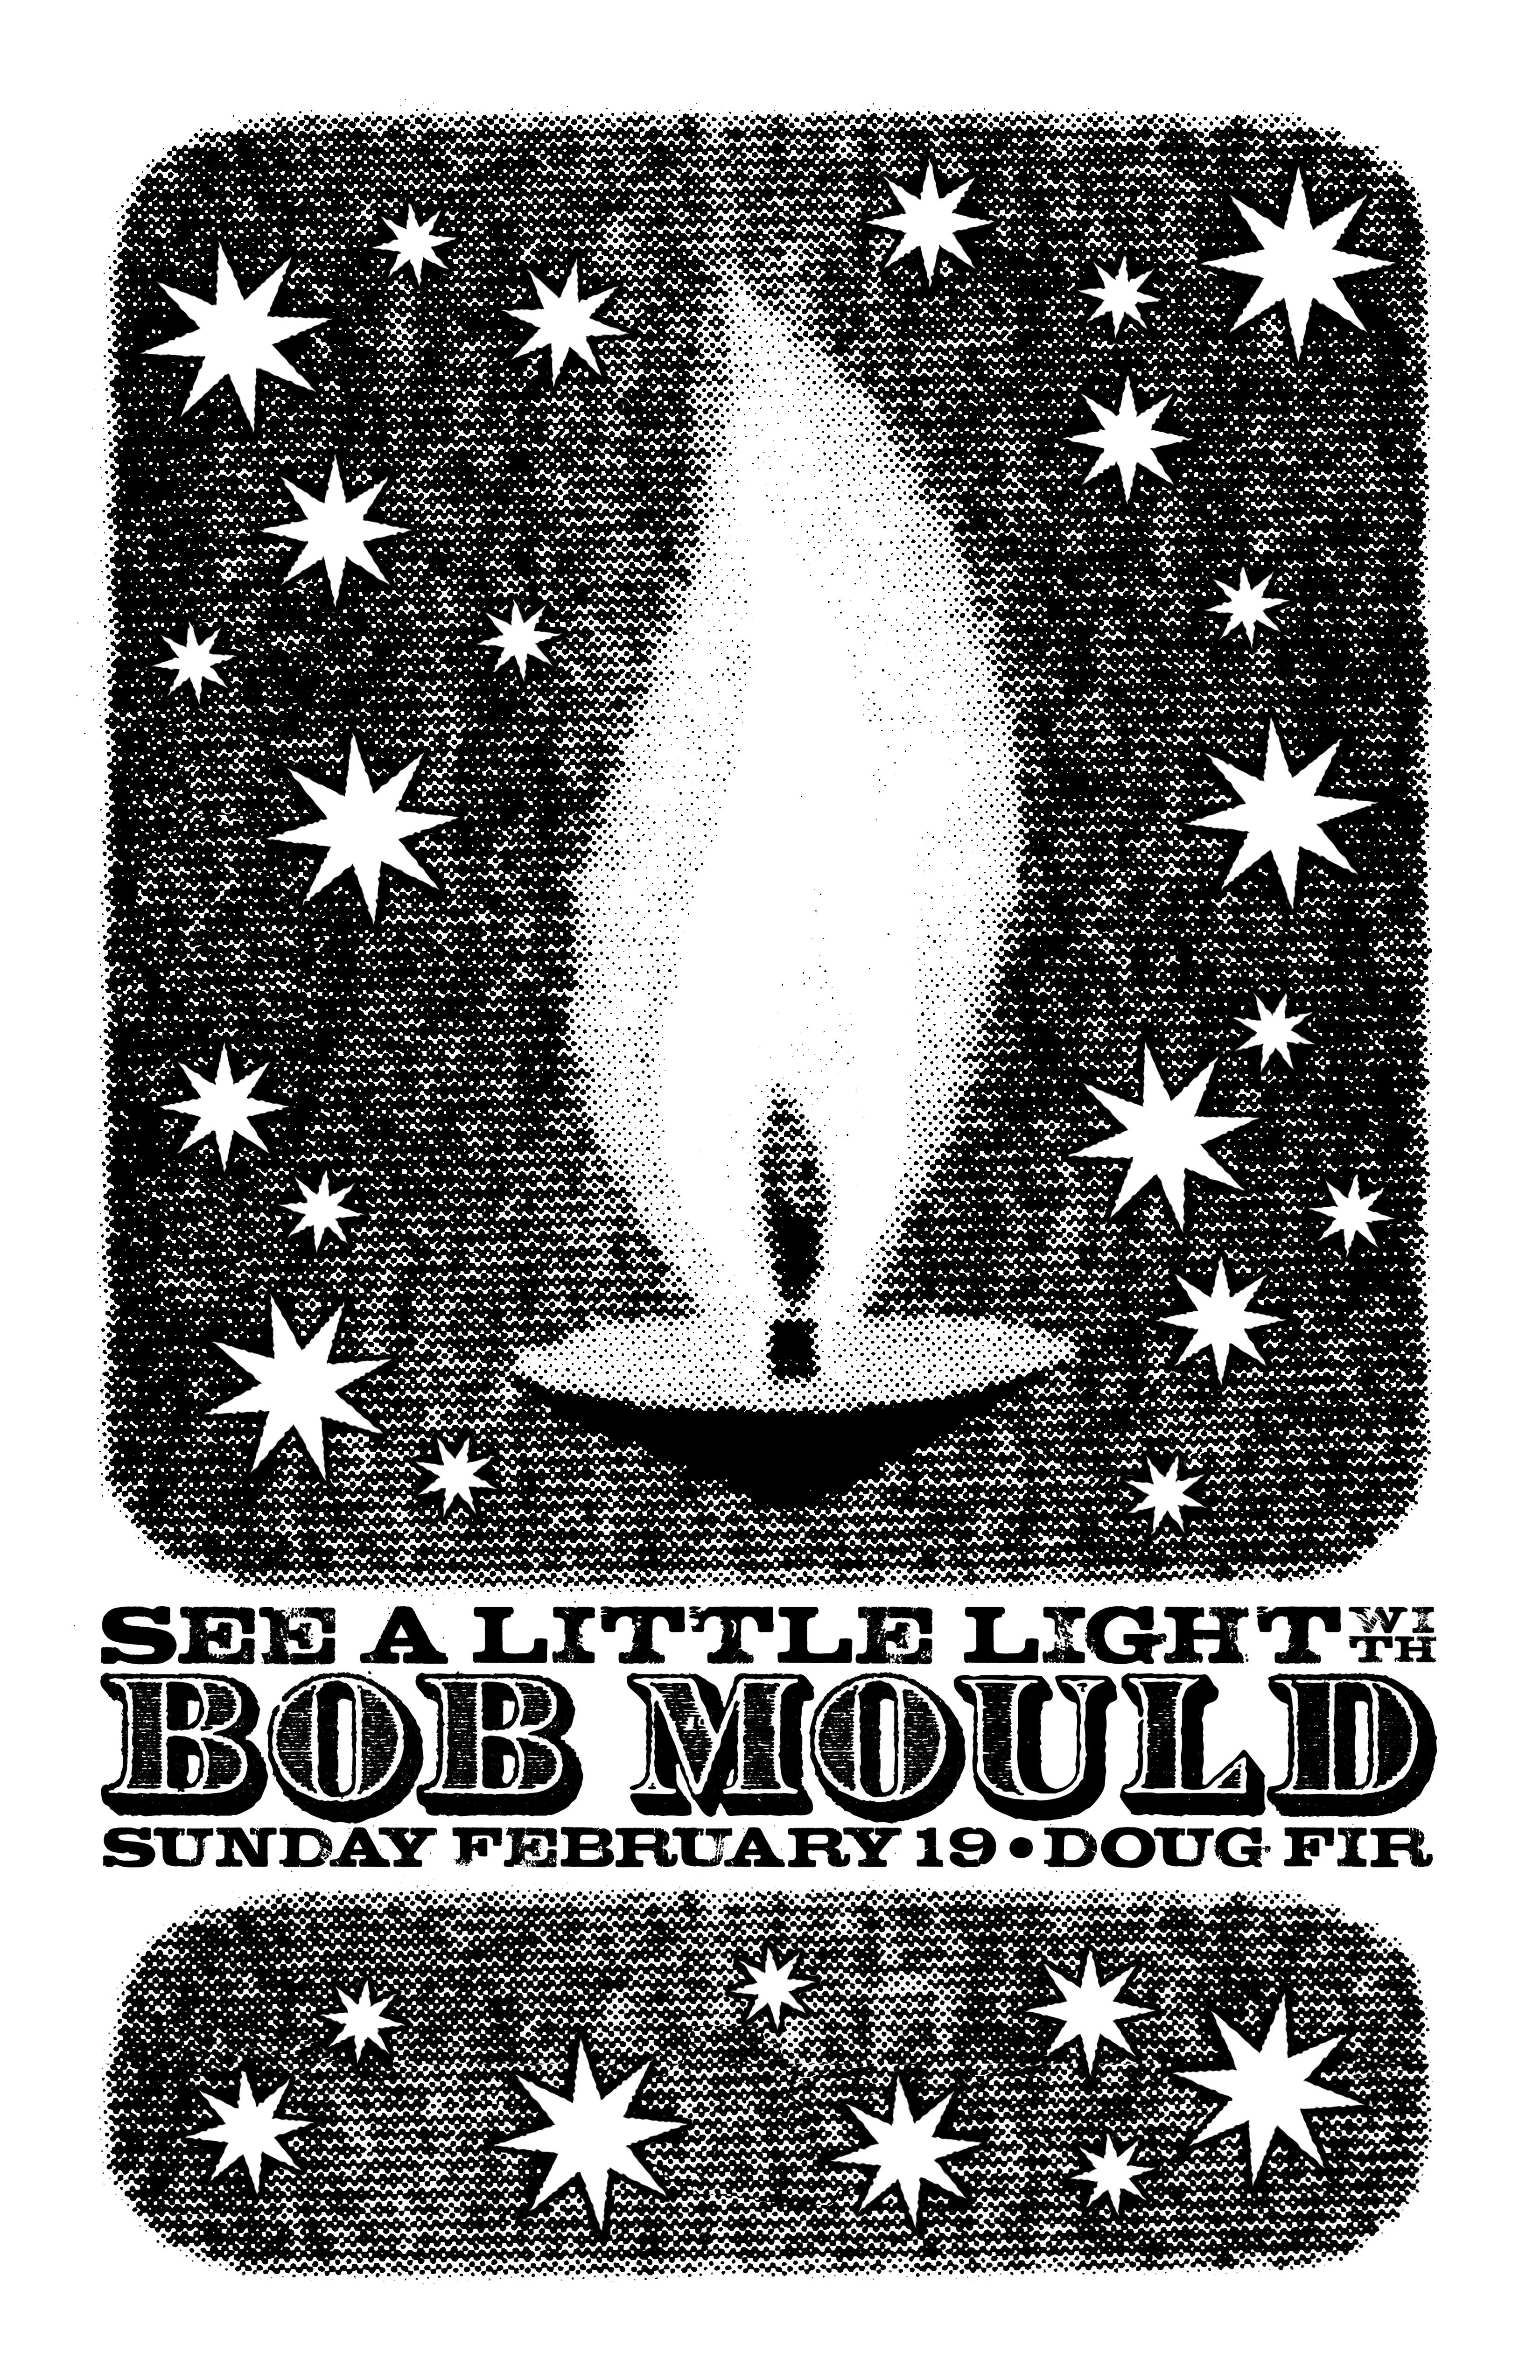 MXP-142.11 Bob Mould 2012 Doug Fir  Feb 19 Concert Poster